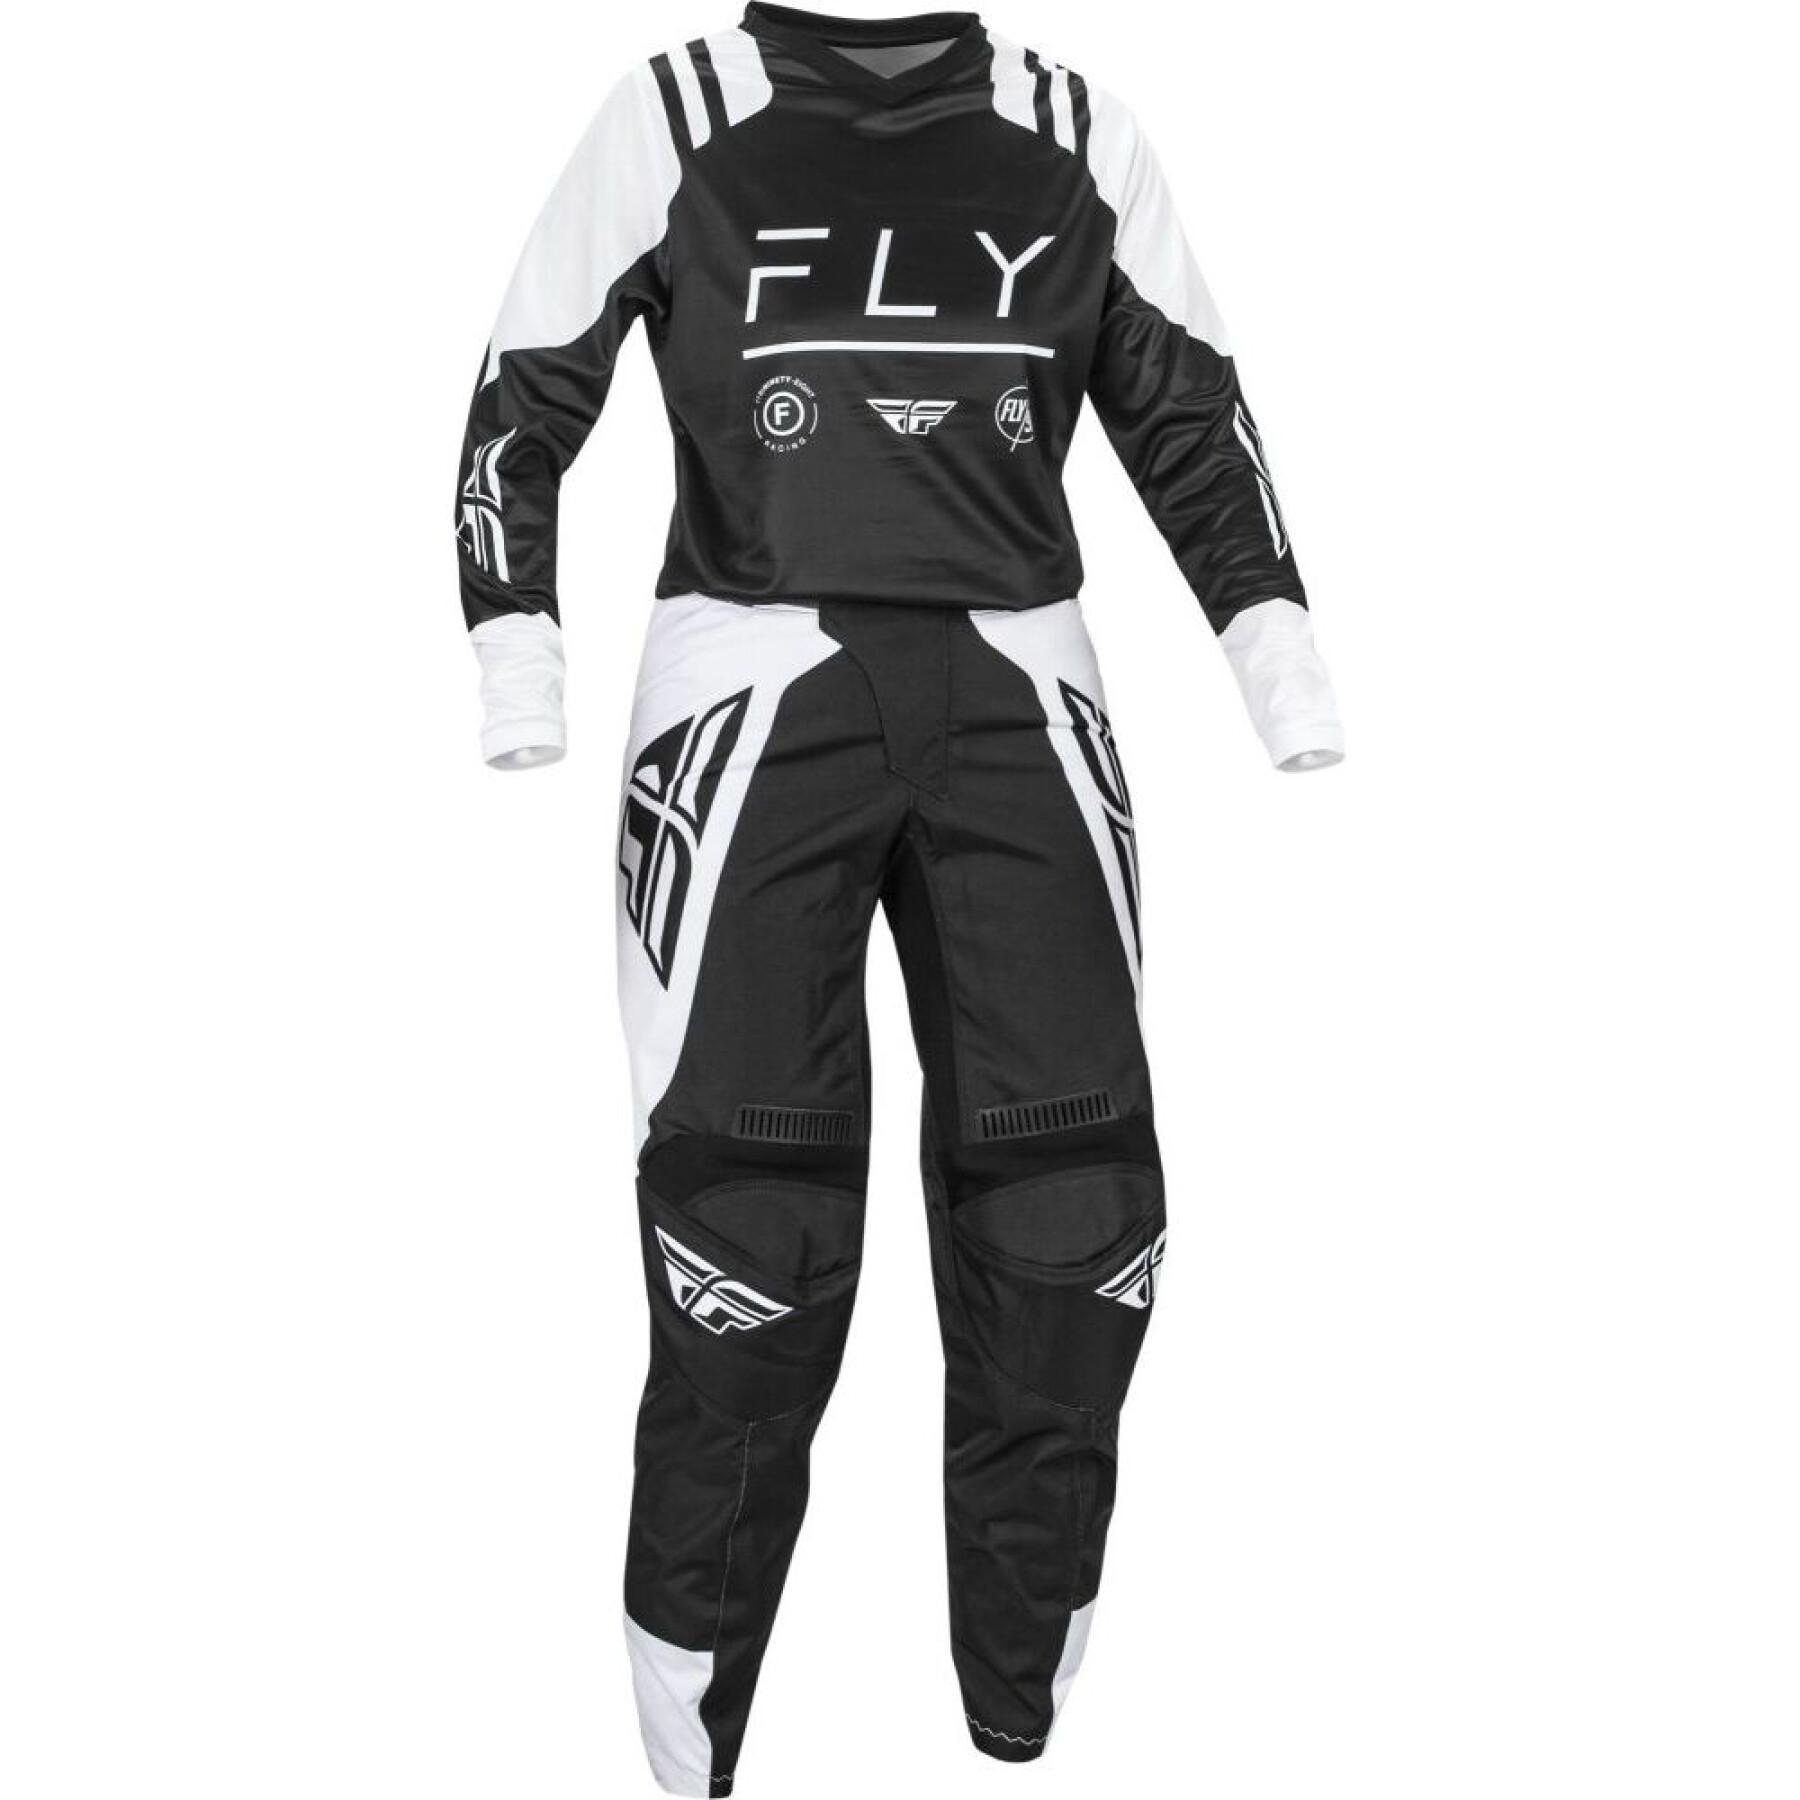 Motorcross-trui voor dames Fly Racing F-16